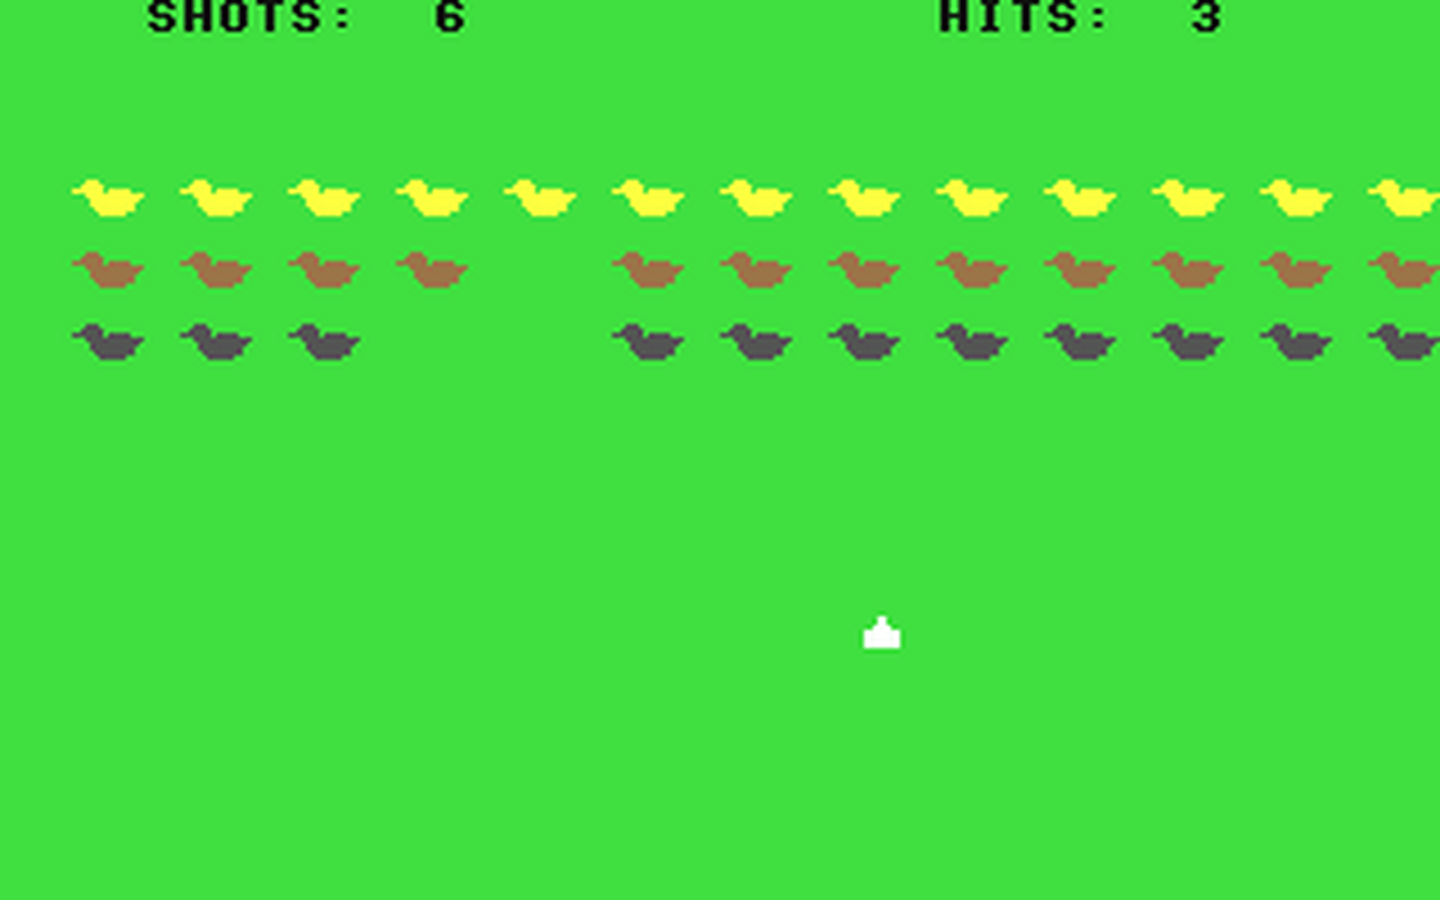 C64 GameBase Duck_Shoot Granada_Publishing_Ltd. 1984